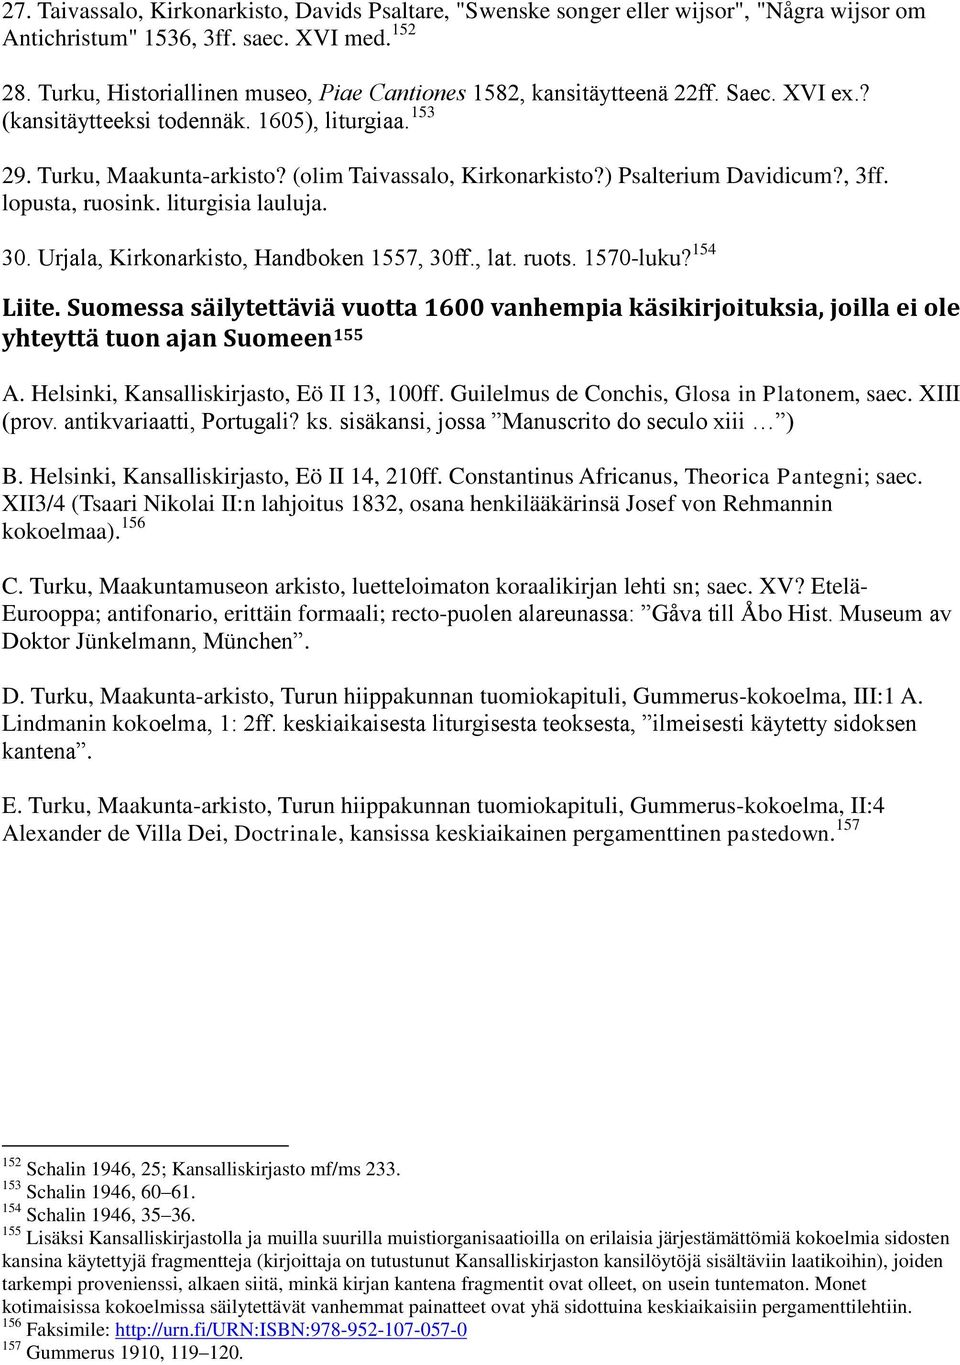 ) Psalterium Davidicum?, 3ff. lopusta, ruosink. liturgisia lauluja. 30. Urjala, Kirkonarkisto, Handboken 1557, 30ff., lat. ruots. 1570-luku? 154 Liite.